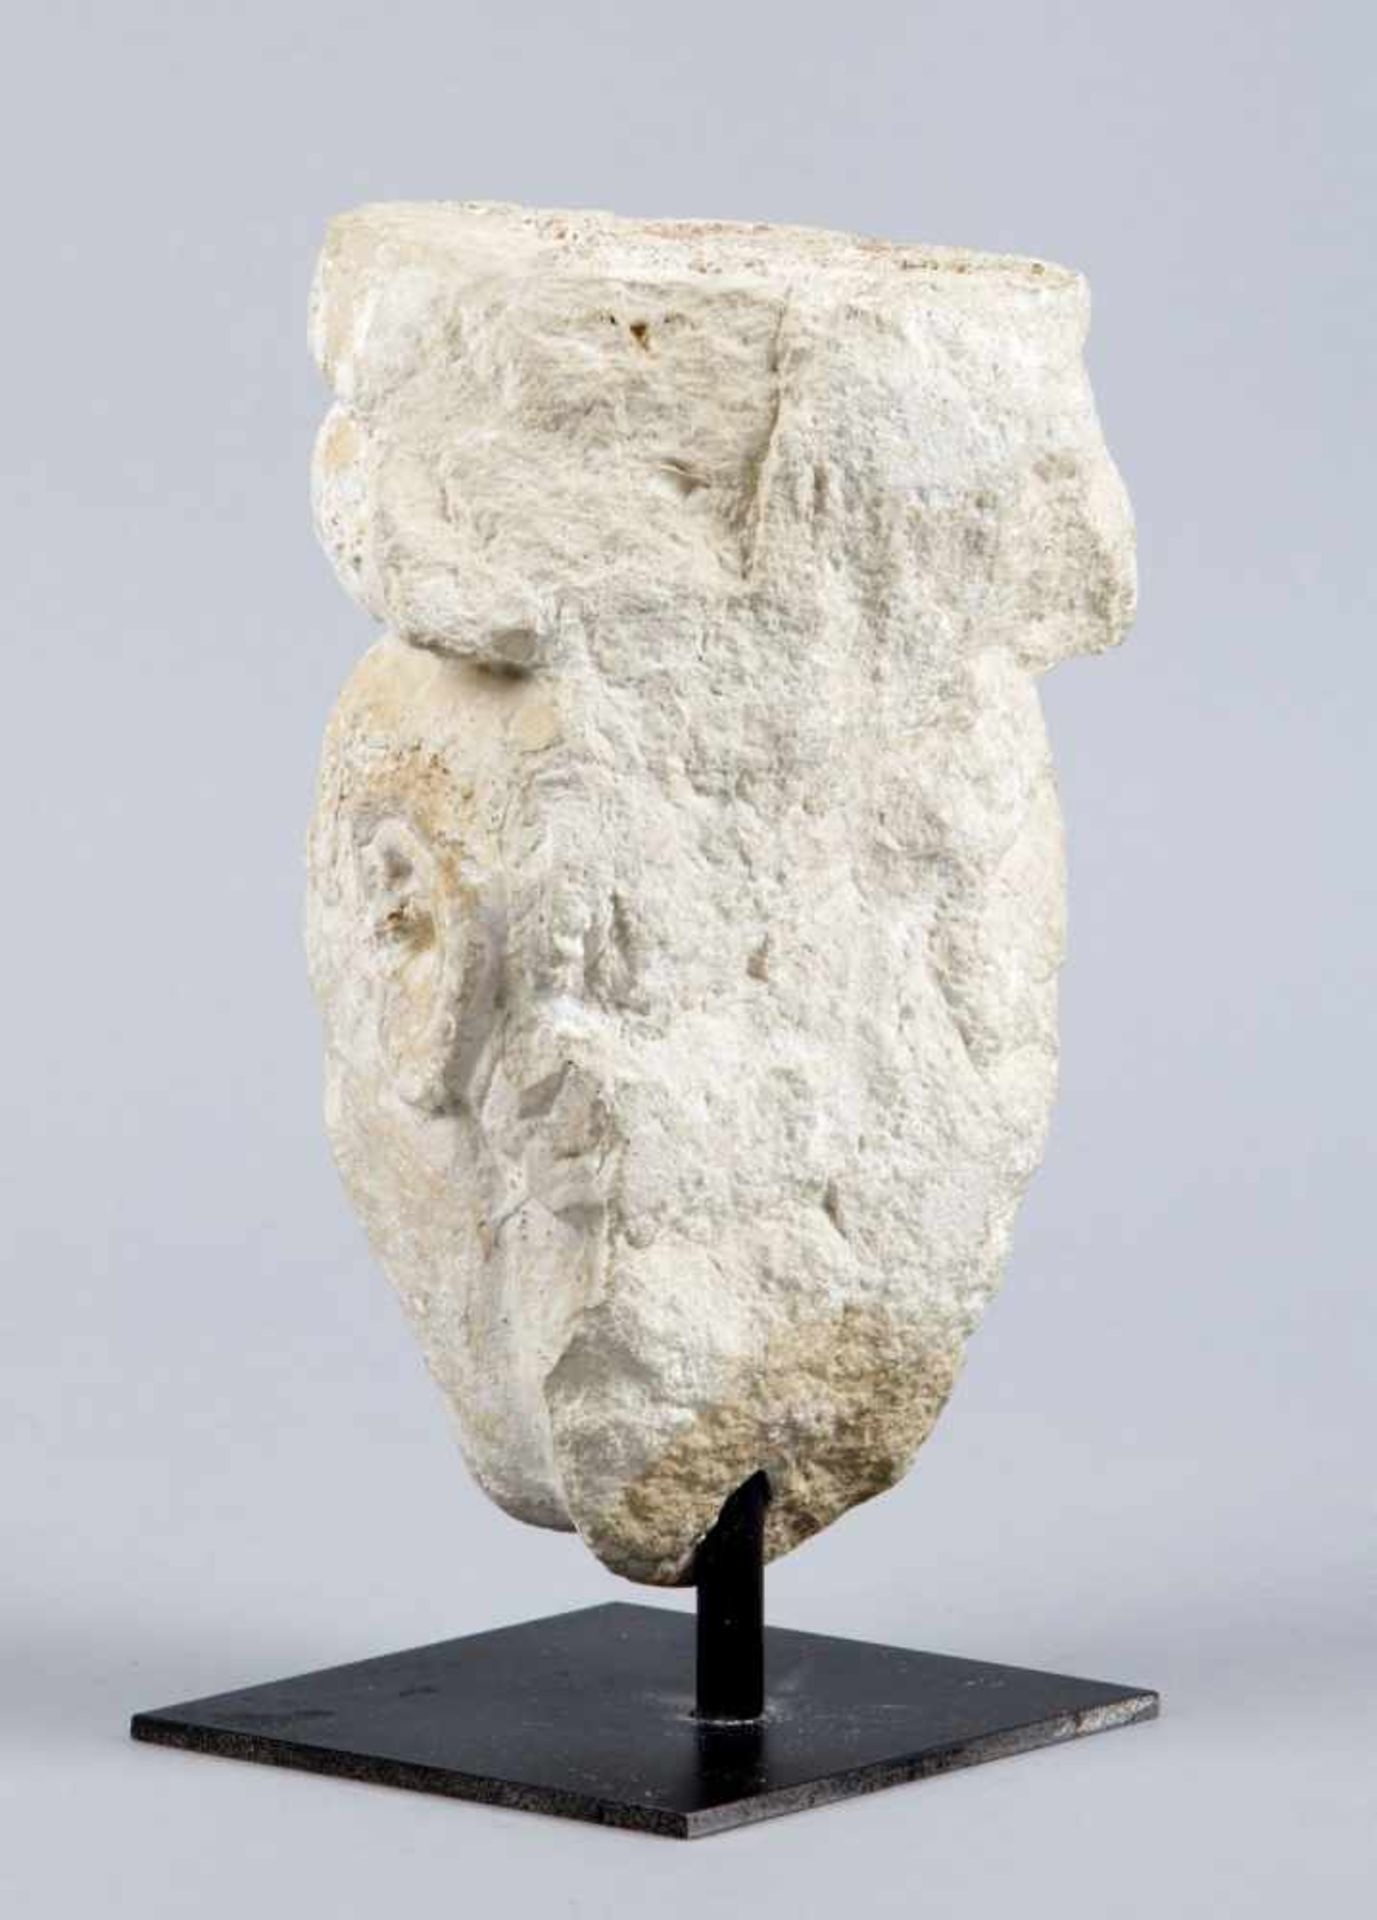 SäulenfragmentMit der Darstellung eines Gesichts. Sandstein. H. 20 cm.- - -27.00 % buyer's premium - Bild 3 aus 3